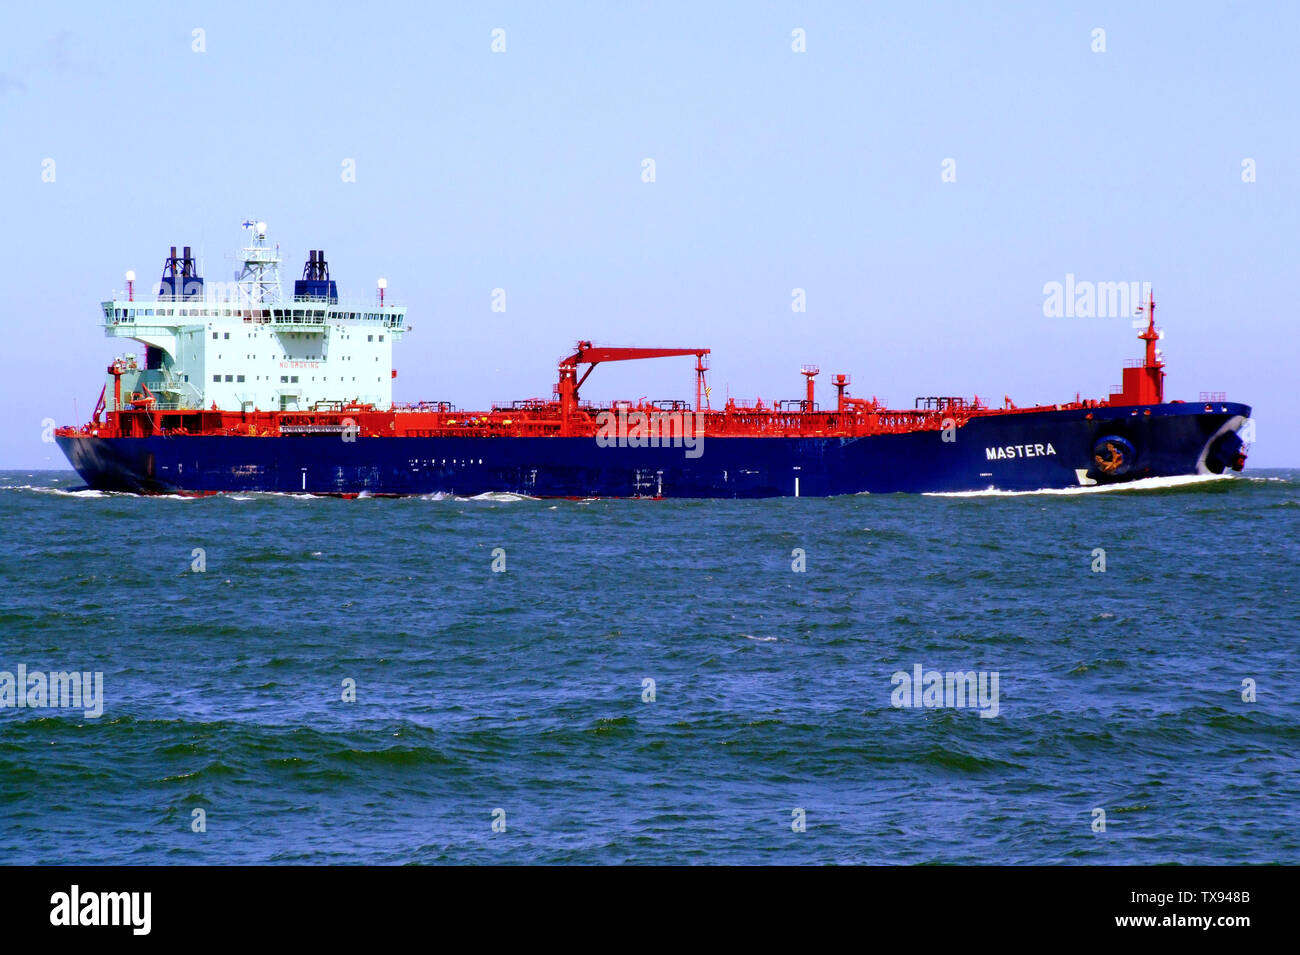 MT Mastera in Rotterdam harbour. IMO Number:   9235892 MMSI Number:  230945000 Callsign:  OJKE Length:  252 m Beam:  44 m Der dieselelektrisch angetriebene Tanker MASTERA, in Japan 2003 gebaut, hat einen Tiefgang von 15,30 m. Es ist mit 64259 BRZ; TragfÃ¤higkeit: 106206 tdw vermessen und besitzt eine DoppelhÃ¼lle. FÃ¼r die Eisfahrt hat das Schiff auch eine BrÃ¼cke nach achtern.; 20 June 2007; wp:en [1]; Alf van Beem; Stock Photo